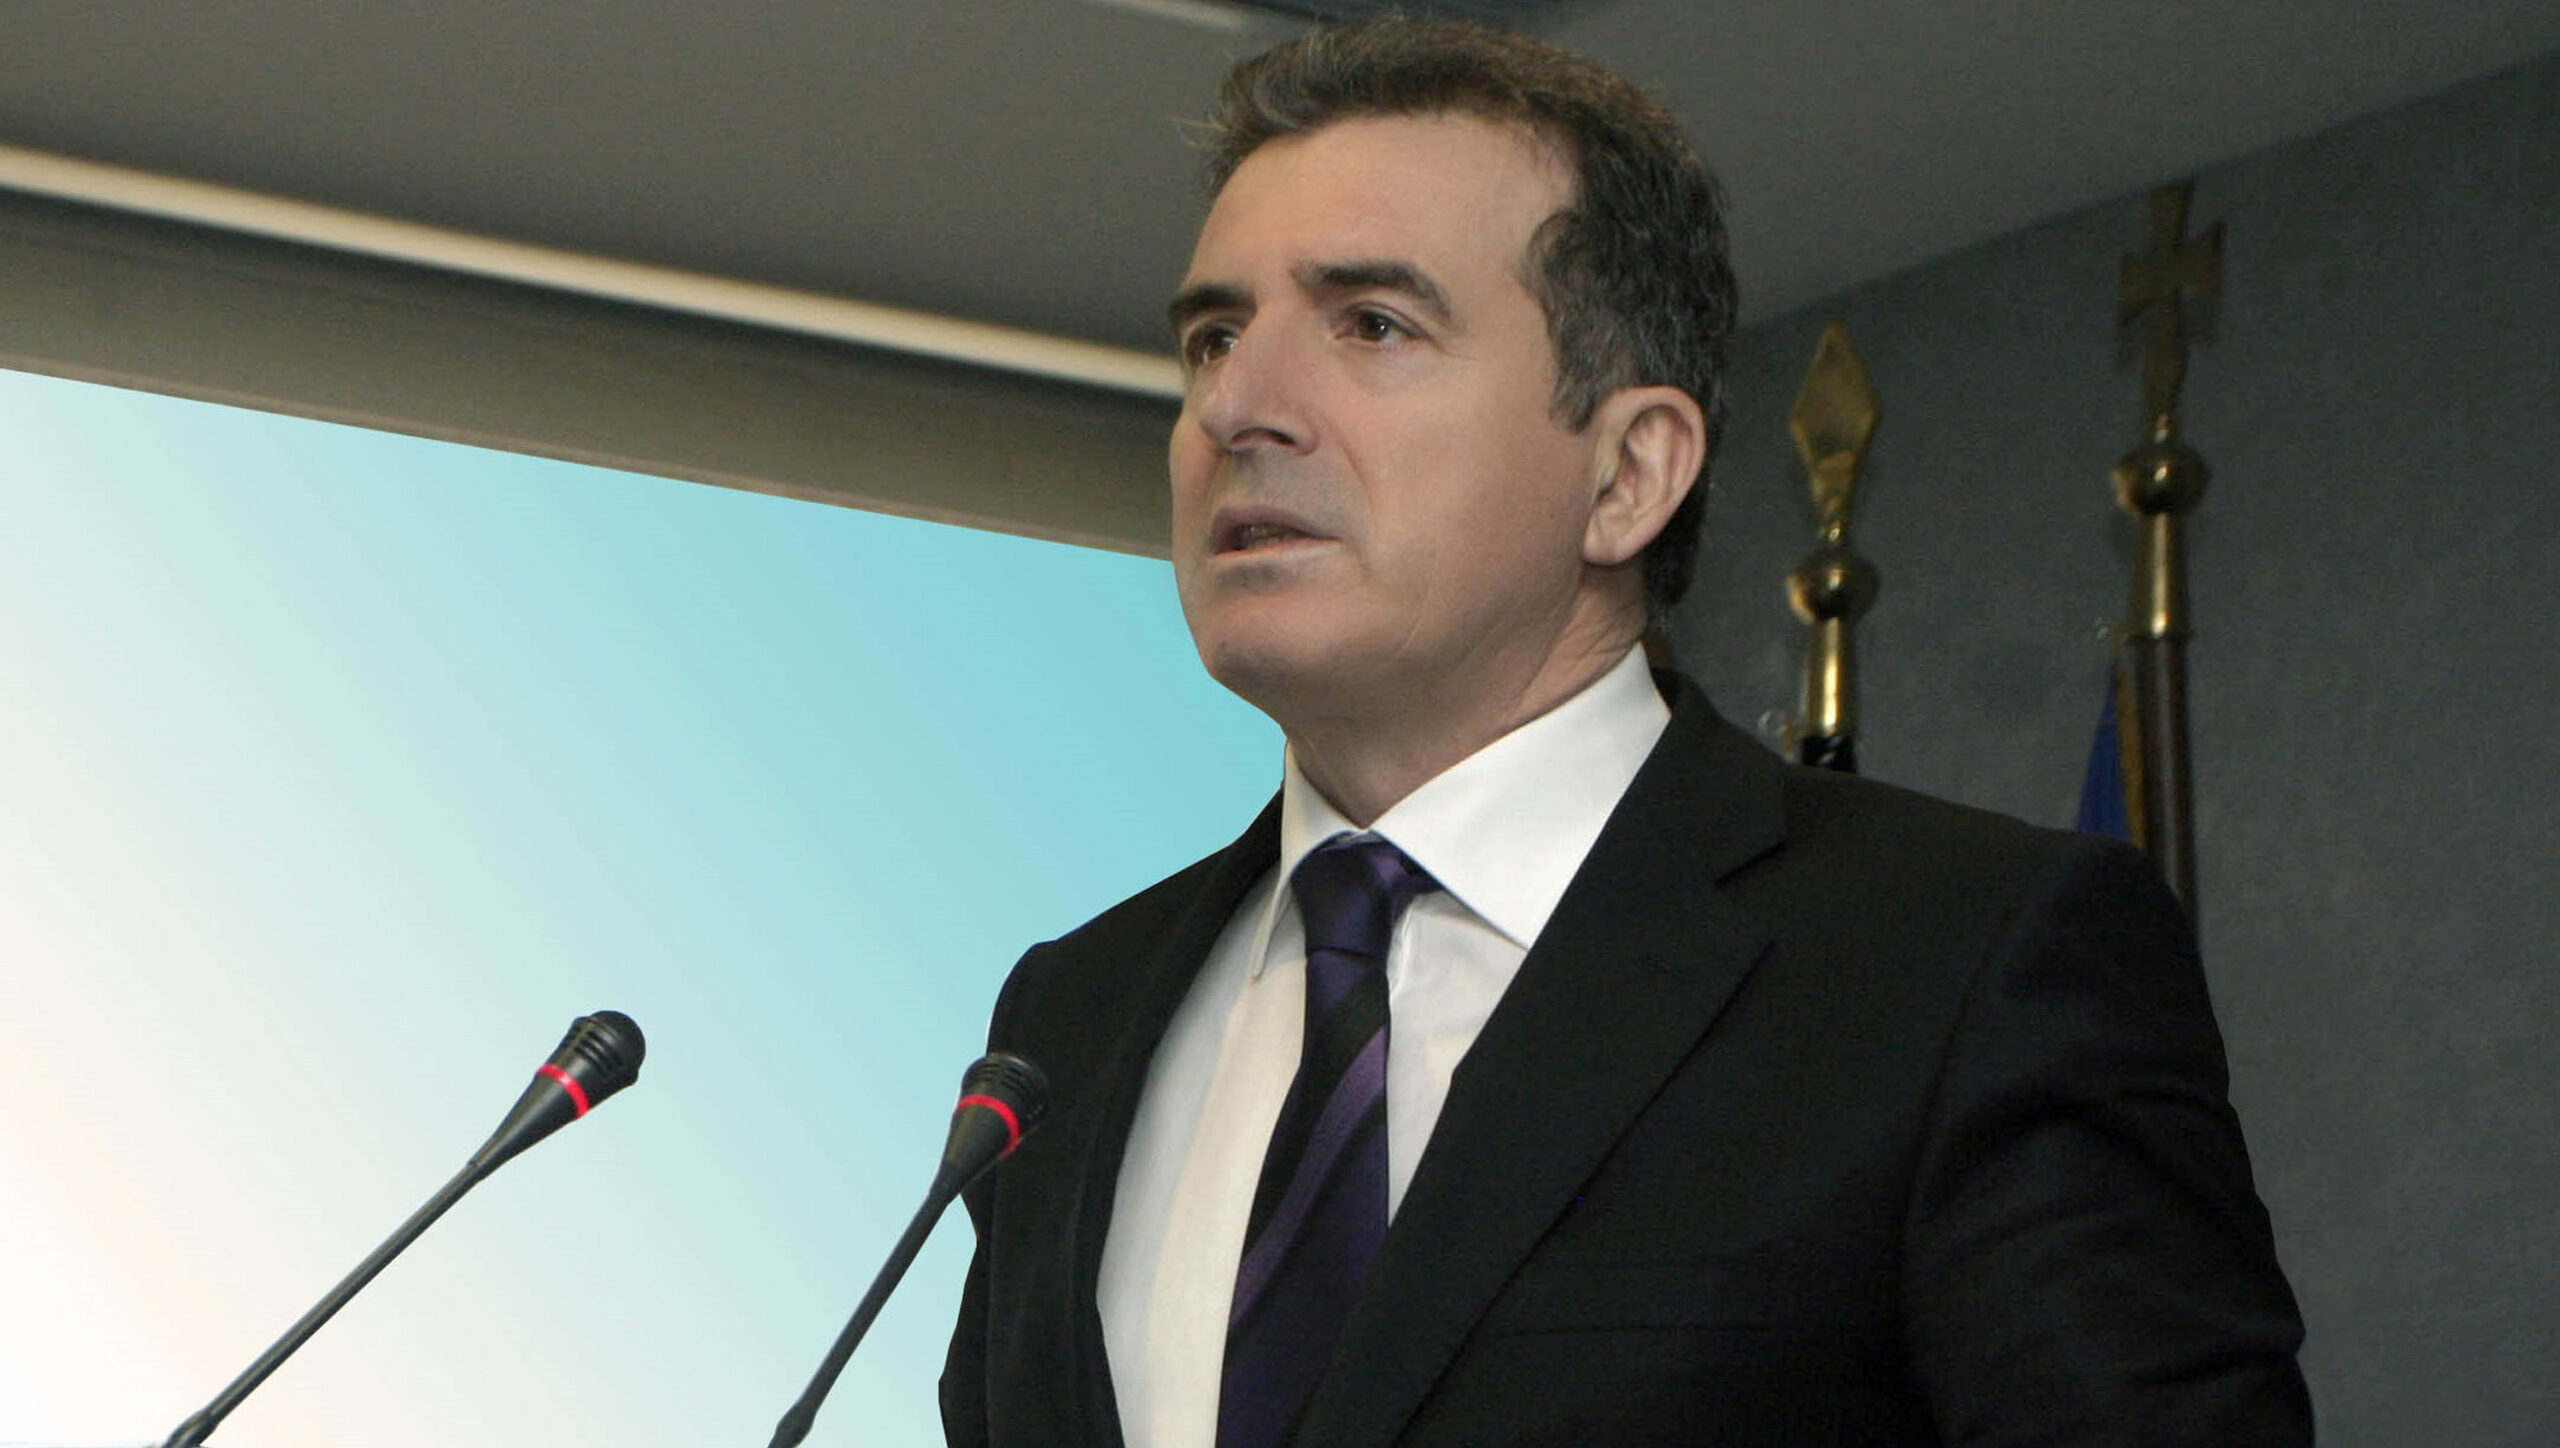 Μυρίζουν εκλογές: Νέα επίσκεψη υπουργού στην Πελοπόννησο